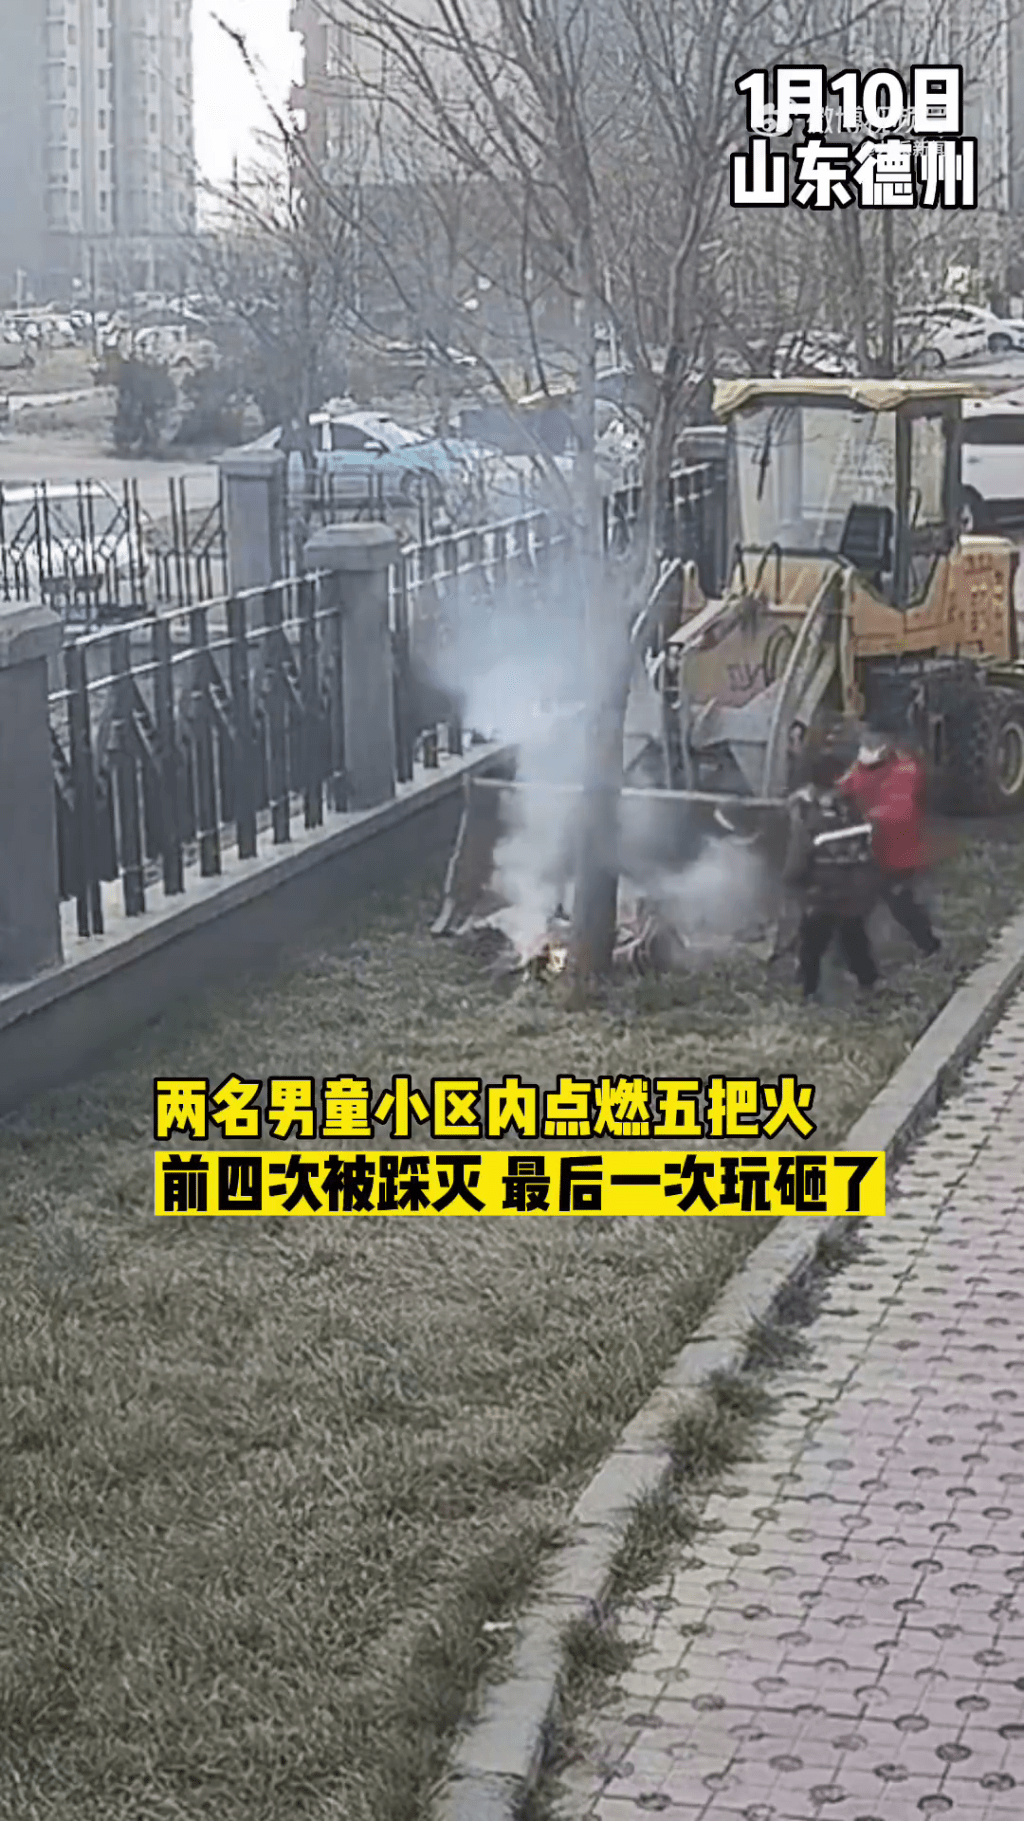 两名小童在社区一辆铲车后玩火，杂草被烧得冒出白烟。